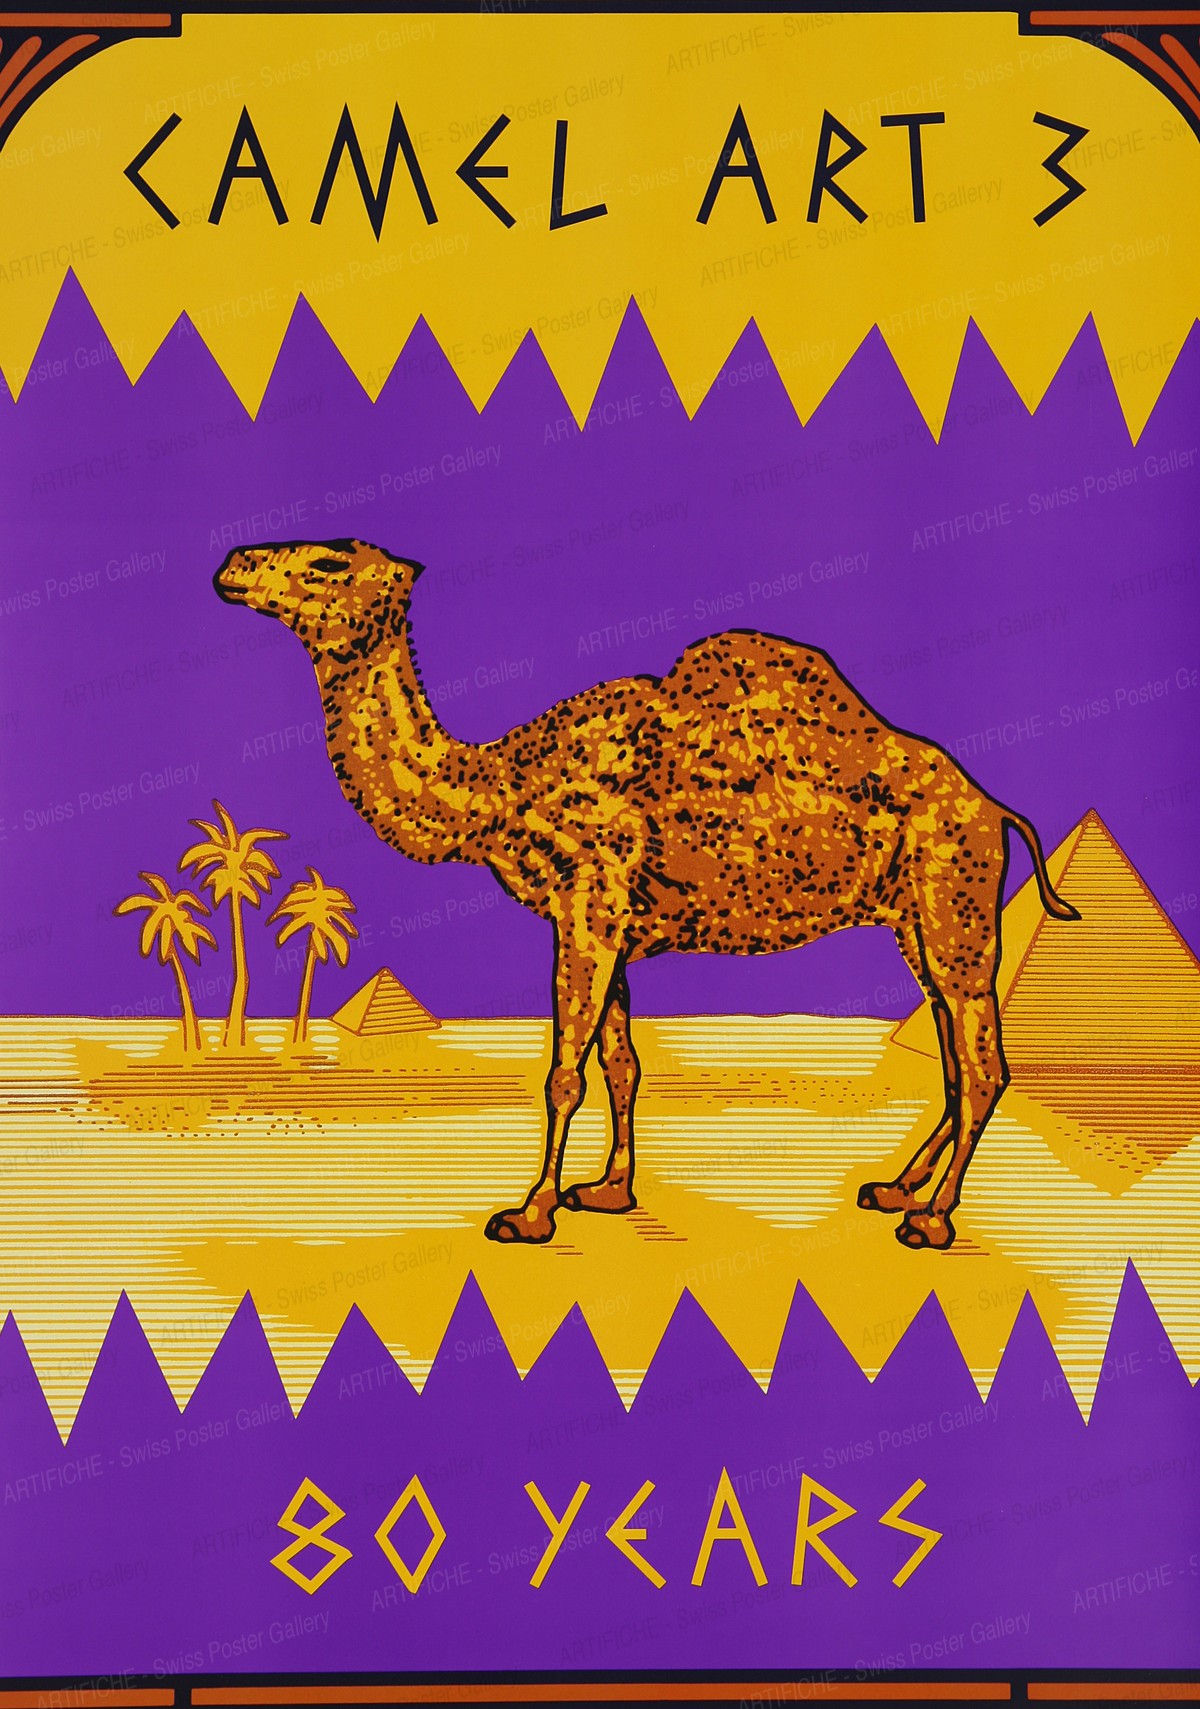 Camel art 3 – 80 years, Artist unknown